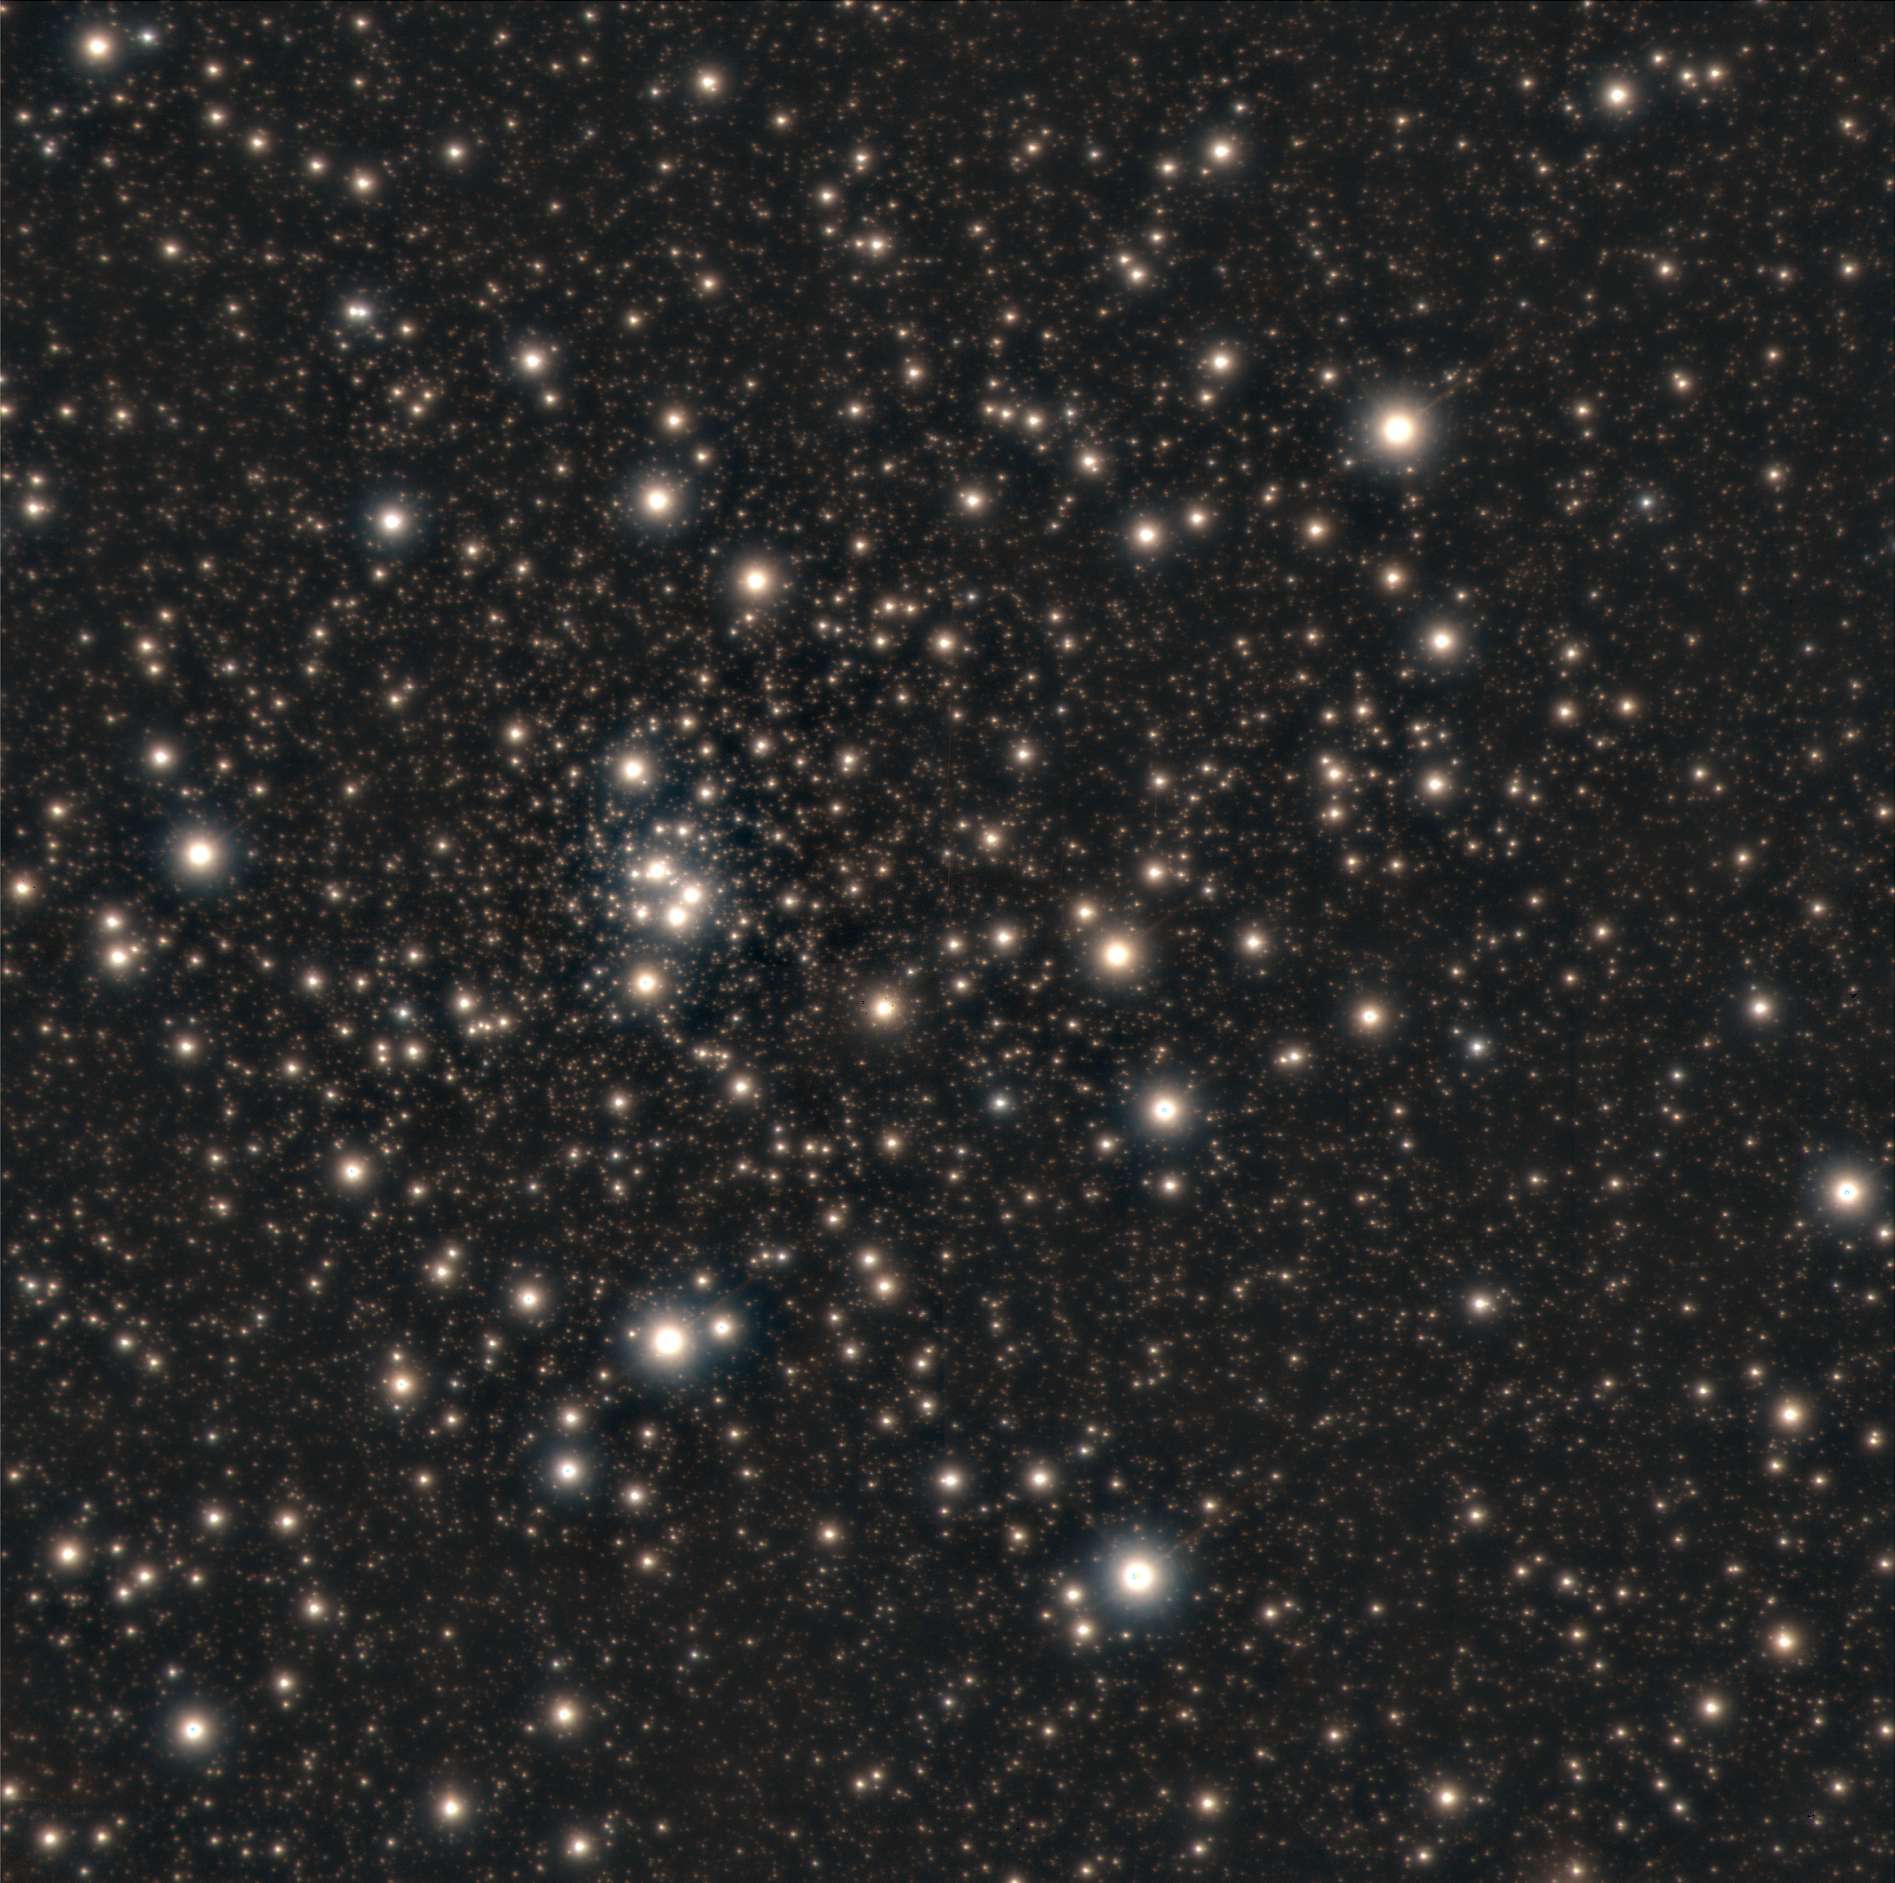 Image haute résolution de l'amas globulaire HP 1 produite par le télescope Gemini sud grâce à ses instruments d'optique adaptative GSAOI et GeMS. On connaît environ 150 à 160 amas globulaires dans la Voie lactée, dont un quart dans le bulbe et la majorité dans le halo entourant notre Galaxie. HP 1, du haut de ses 12,8 milliards d'années, est un des amas les plus âgés connus, de même que ses étoiles, qui comptent parmi les plus vieilles de la Voie lactée. © Gemini Observatory/AURA/NSF, composite image produced by Mattia Libralato of Space Telescope Science Institute